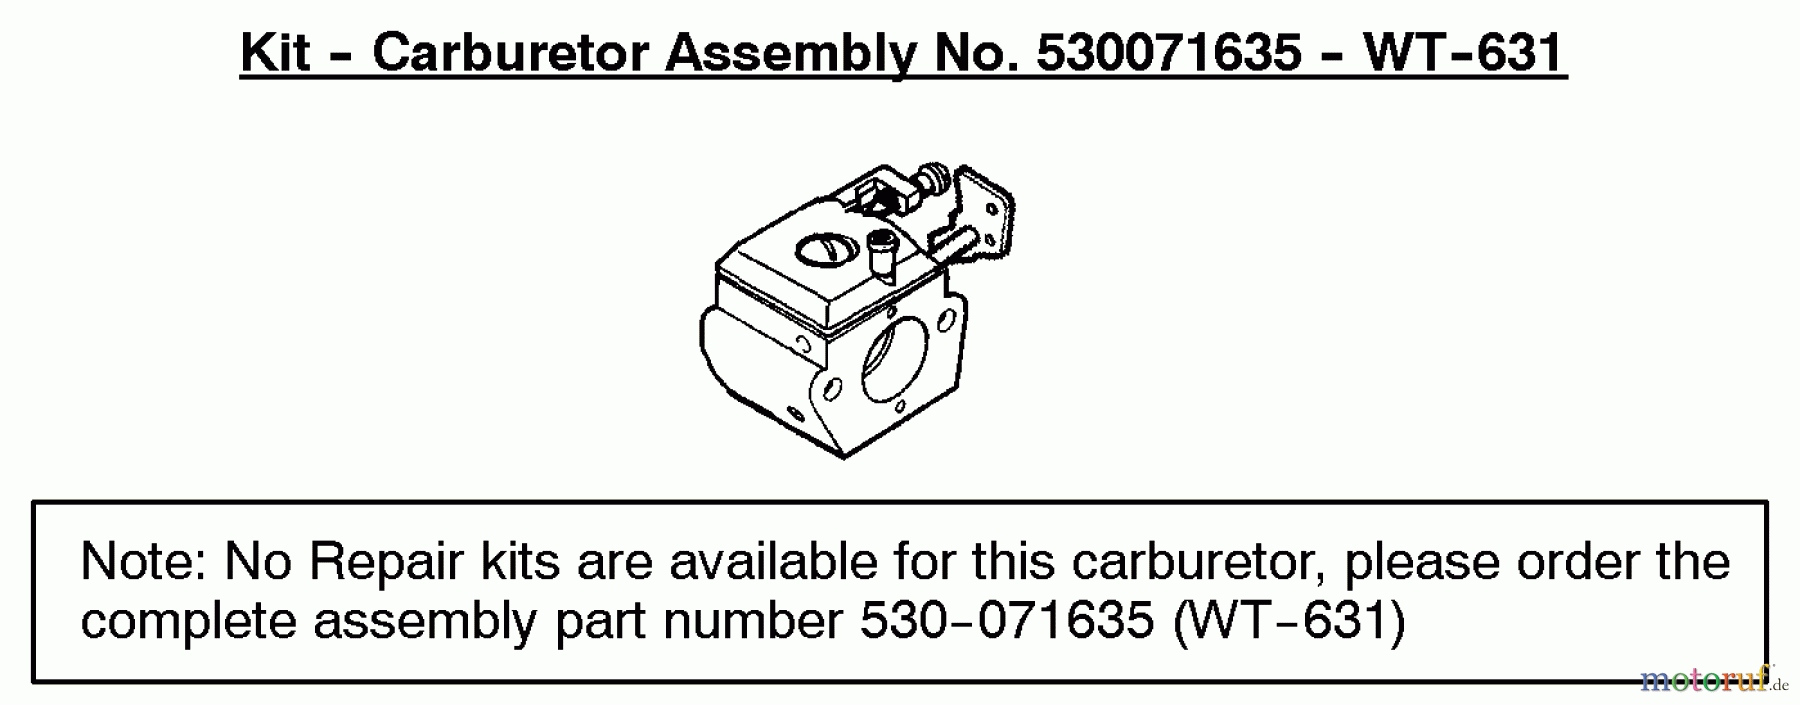  Poulan / Weed Eater Motorsensen, Trimmer PL500 (Type 2) - Weed Eater String Trimmer Carburetor Assembly (WT631) P/N 530071635